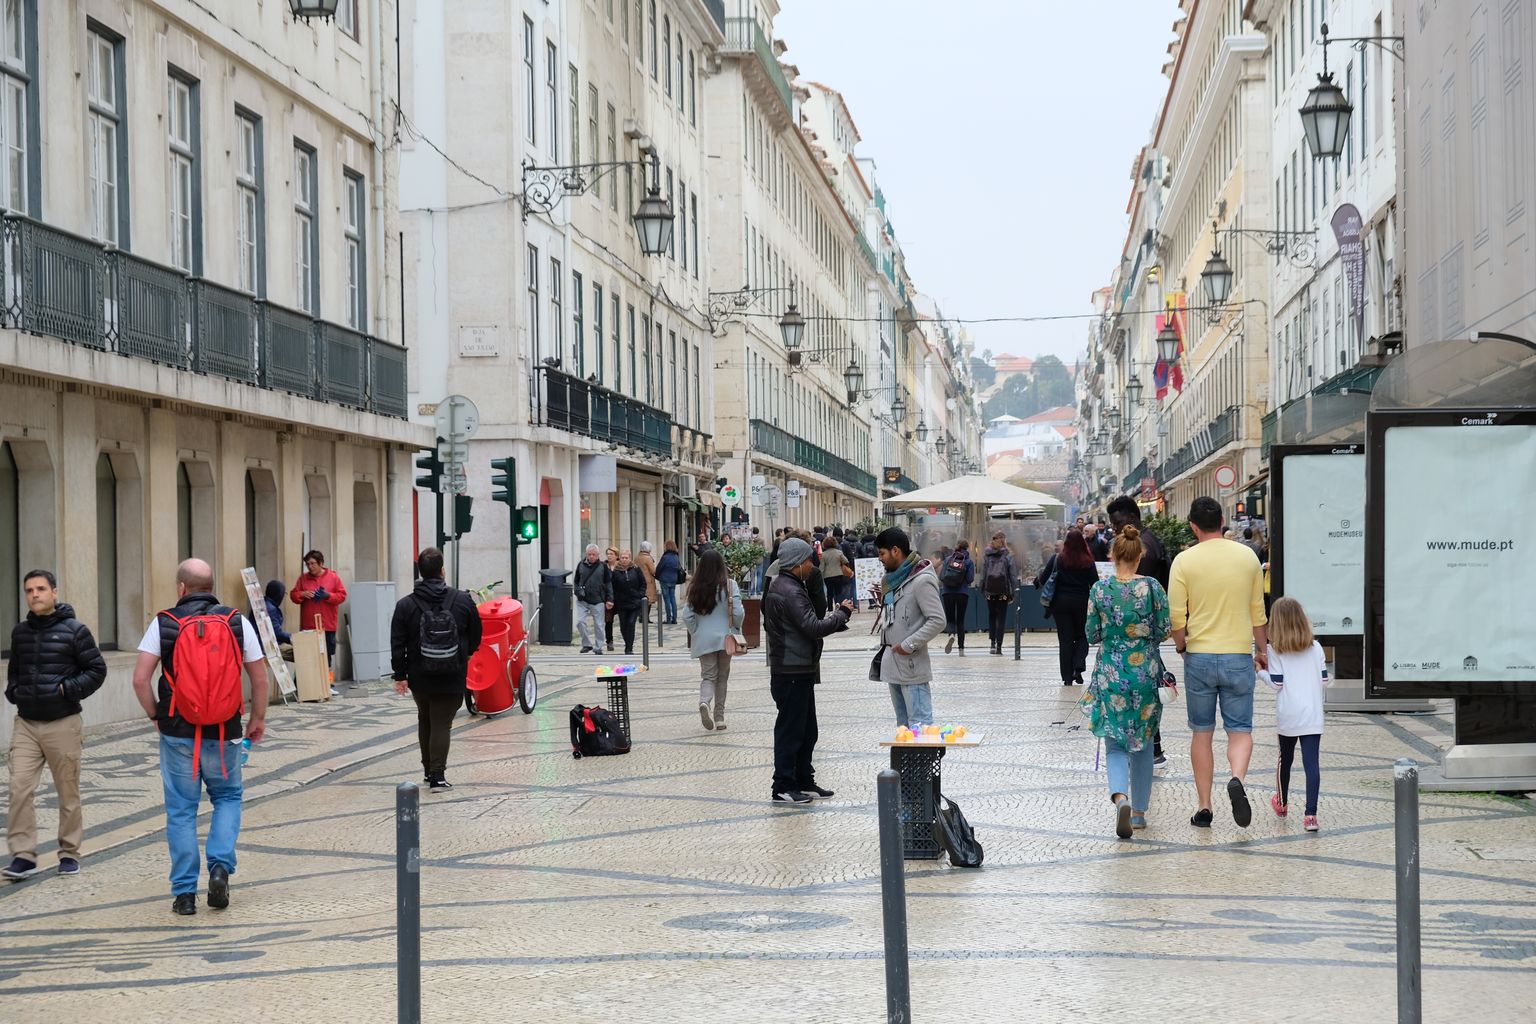 Rua Augusta on Lissaboni üks peamisi tänavaid, kus narkodiilerid turiste varitsevad. Seal võib näiteks kummipallile lisaks osta tänavakaubitsejalt ka narkootikume, mis ei pruugi siiski tihti anda seda joovastavat mõju, mida klient ootas.